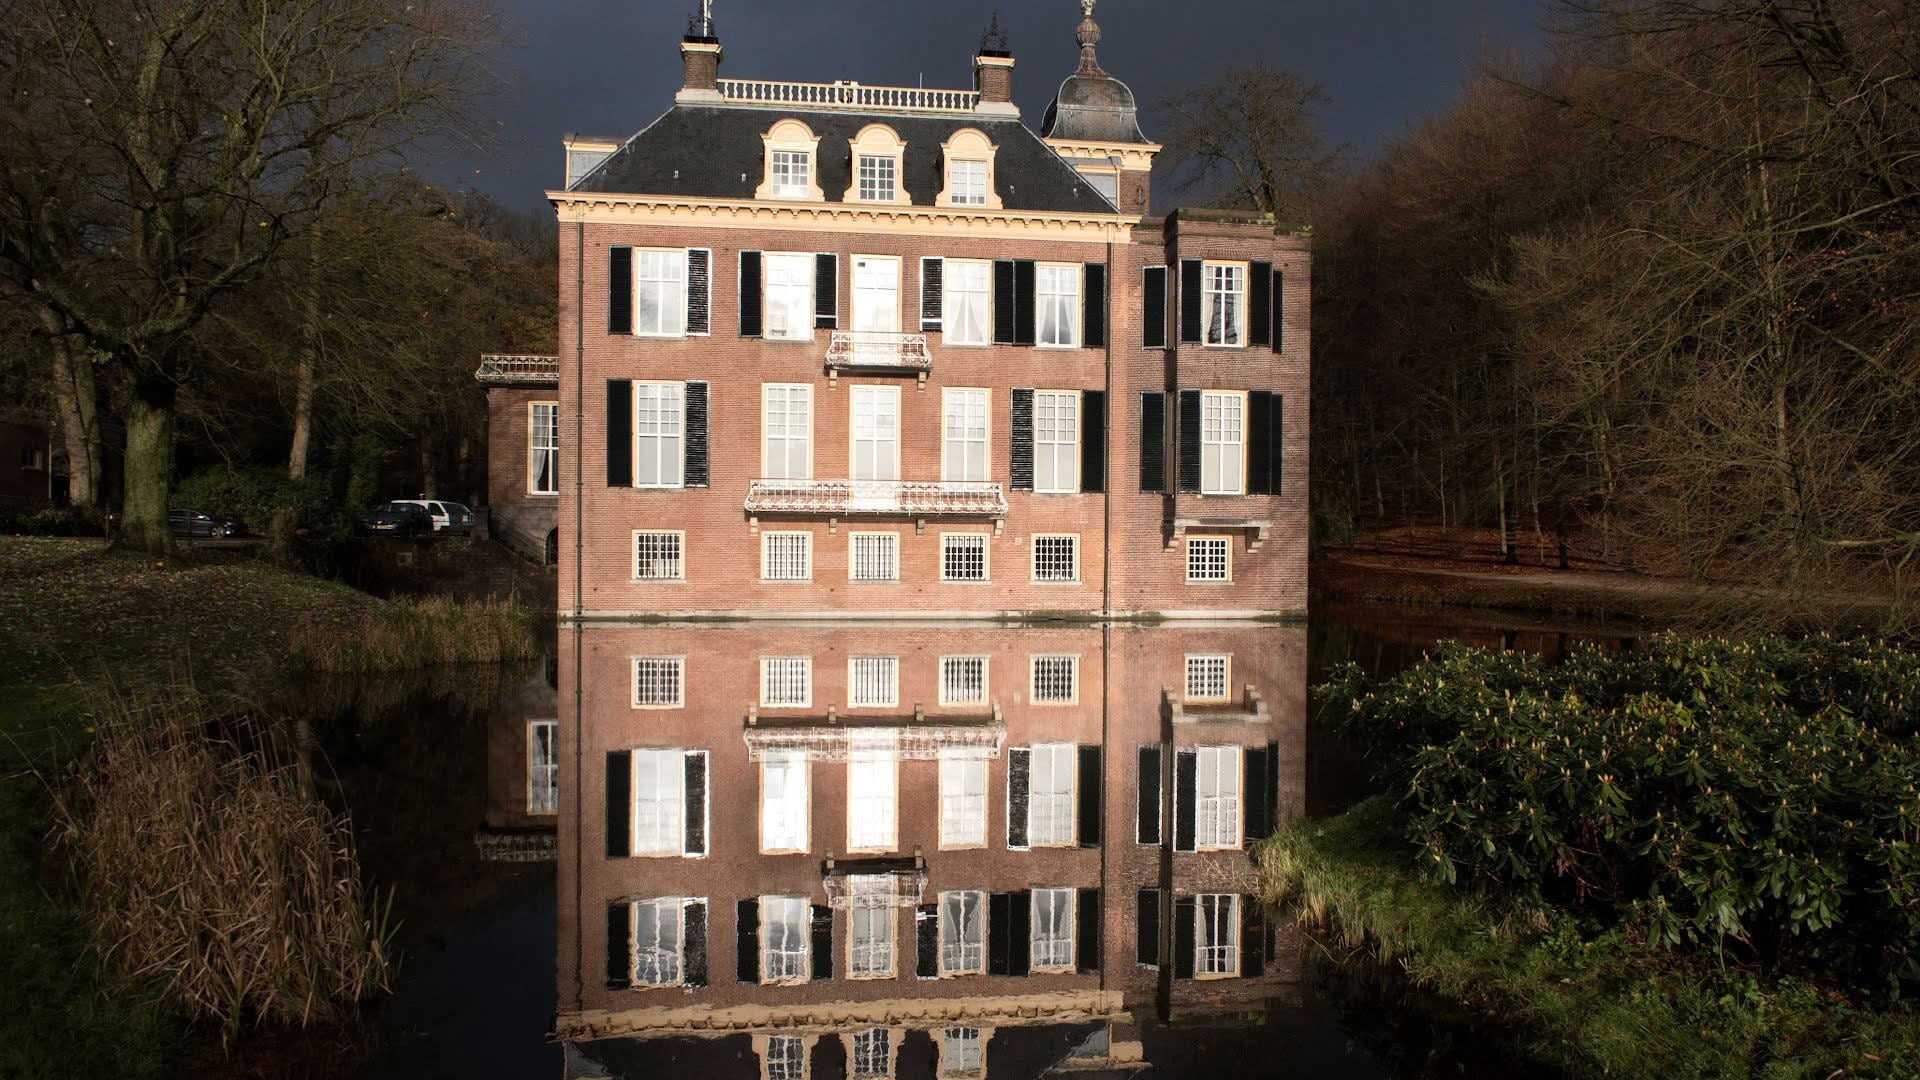 Arnhem heeft vele sporen van slavernij en koloniale handel. Zoals Huis Zypendaal (foto), Park Sonsbeek en Stadsvilla Sonsbeek. 